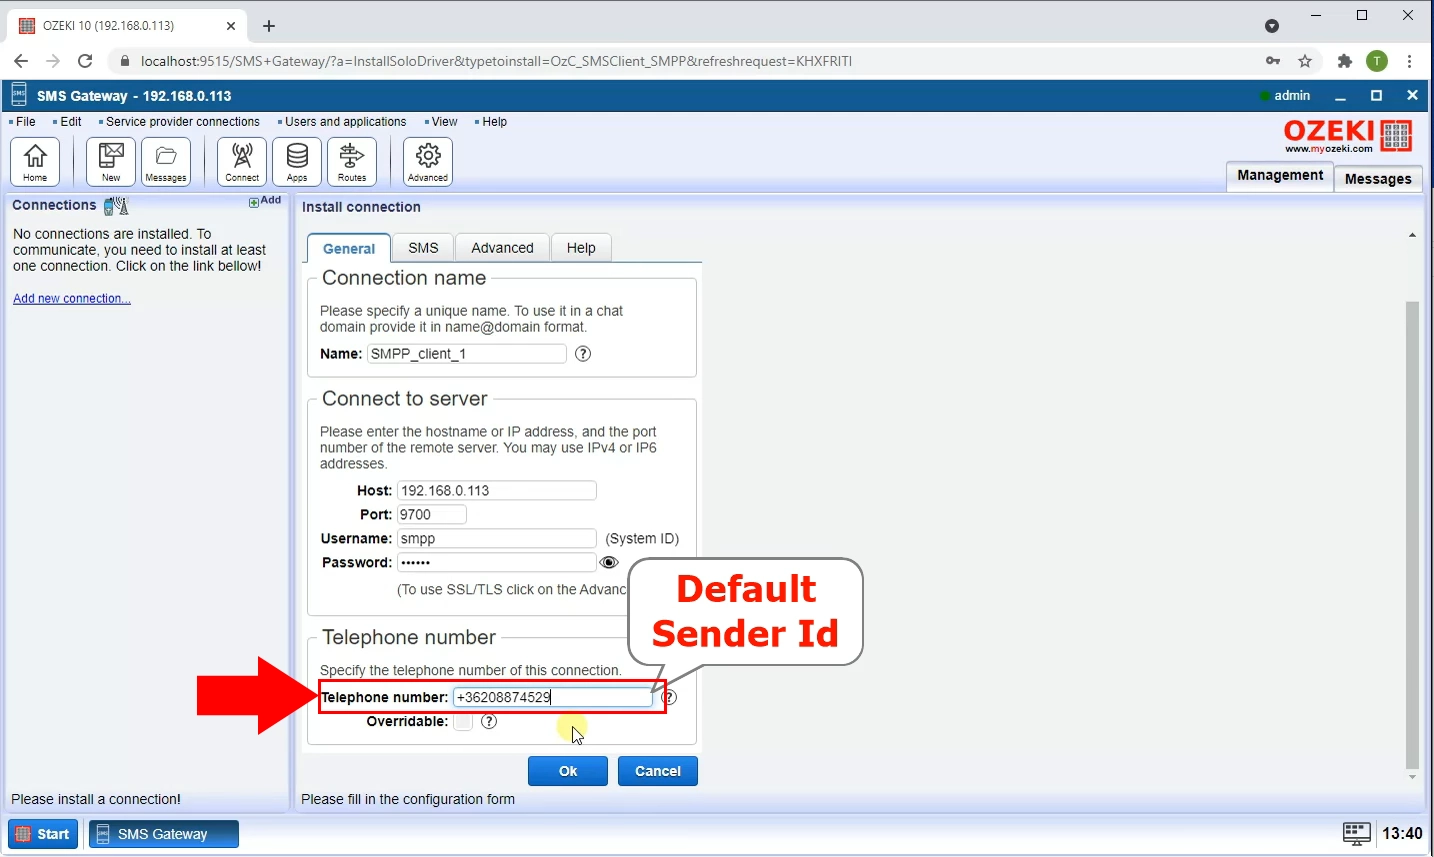 set the default sender id